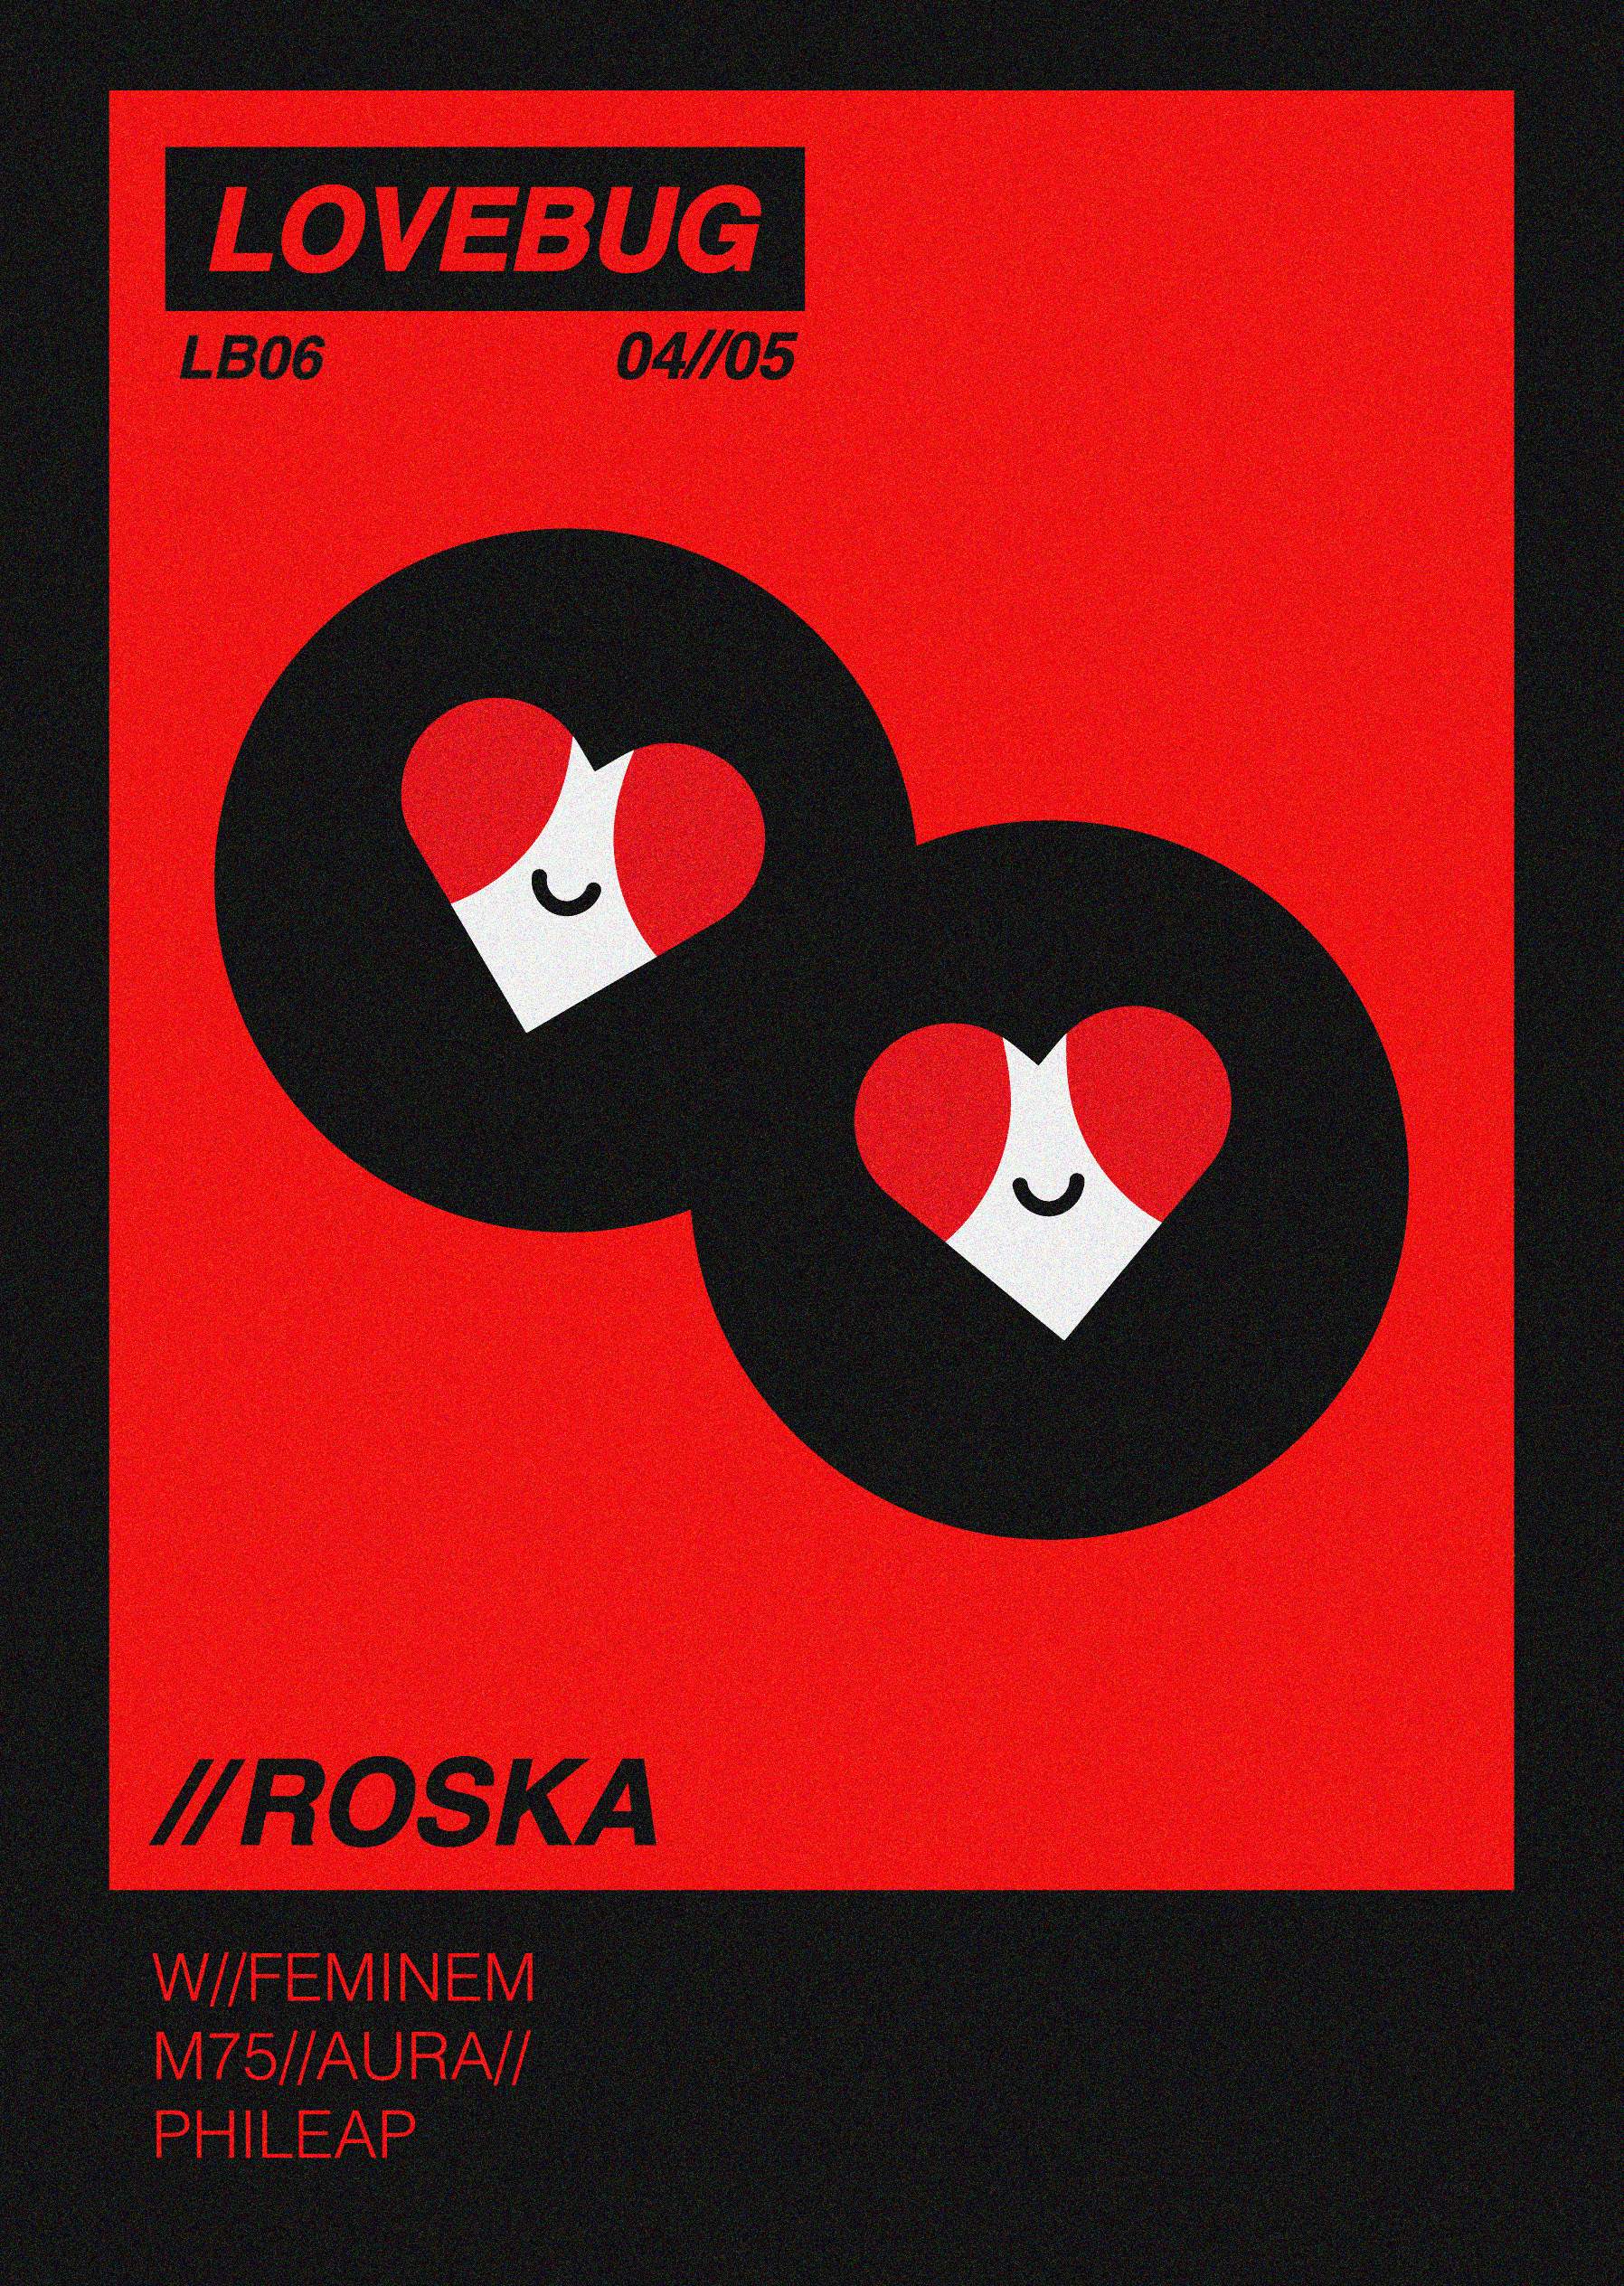 LB06 - LOVEBUG PRESENTS: Roska - フライヤー表